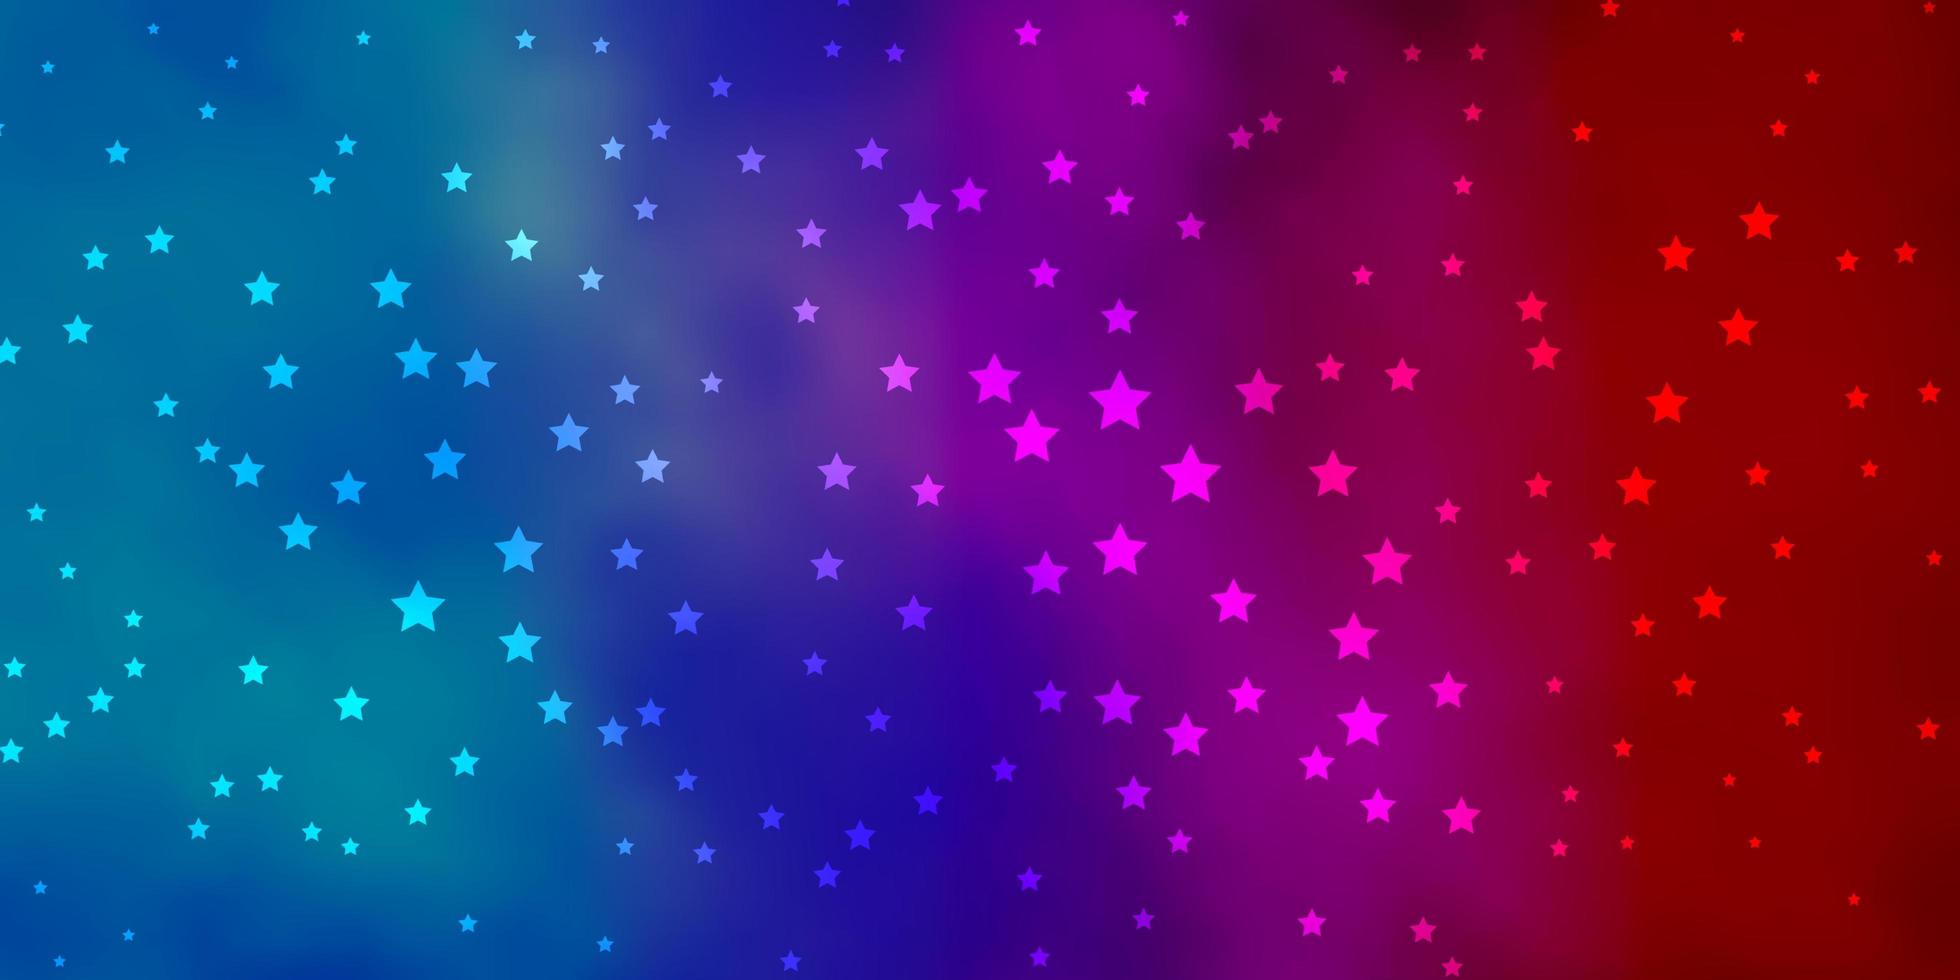 sfondo vettoriale blu scuro, rosso con stelle piccole e grandi. illustrazione decorativa con stelle su modello astratto. modello per incartare i regali.